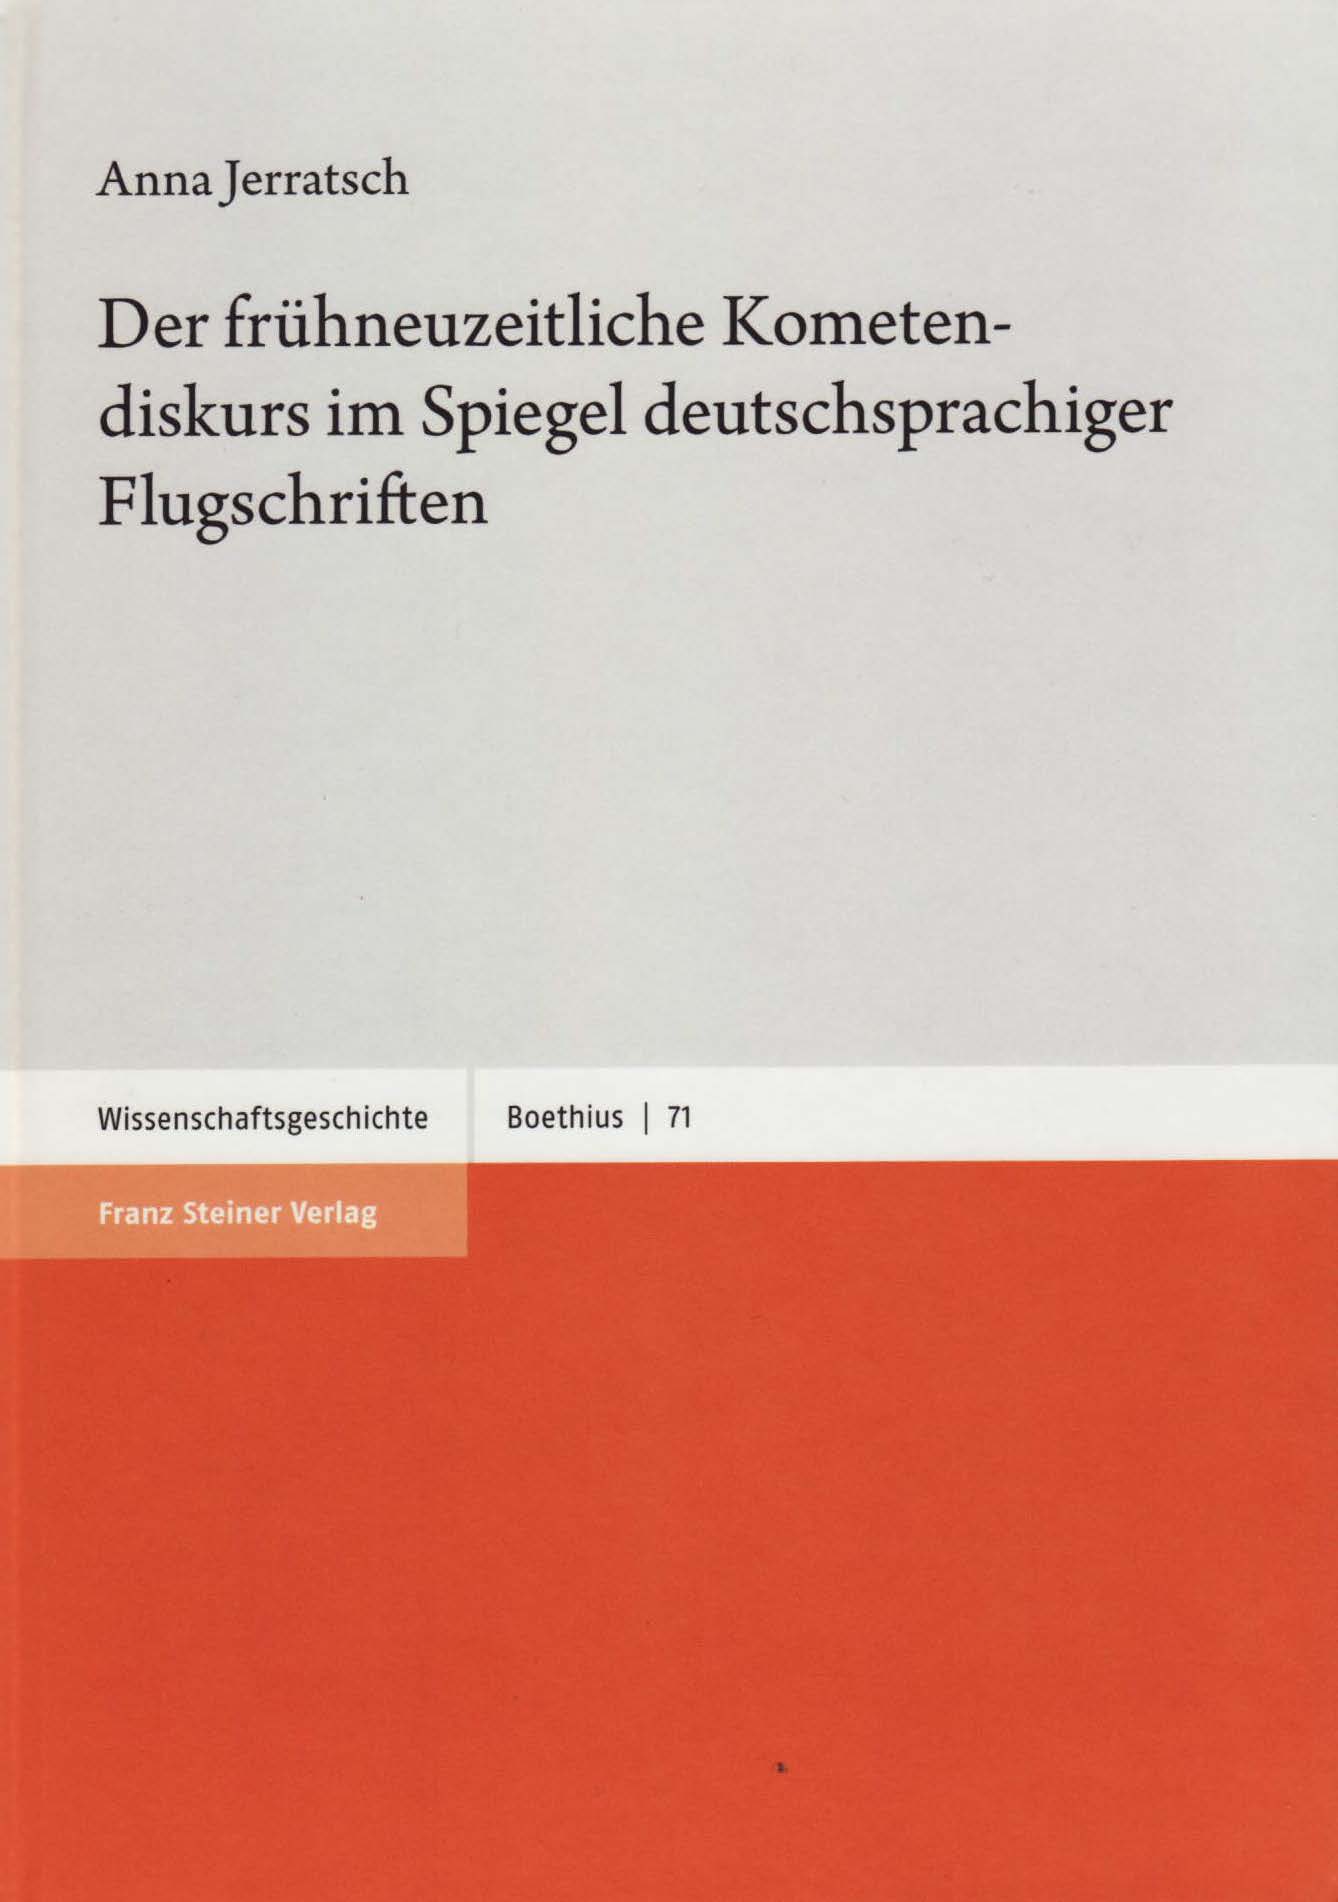 book cover: Anna Jerratsch: Der frühneuzeitliche Kometendiskurs im Spiegel deutschsprachiger Flugschriften (2020)